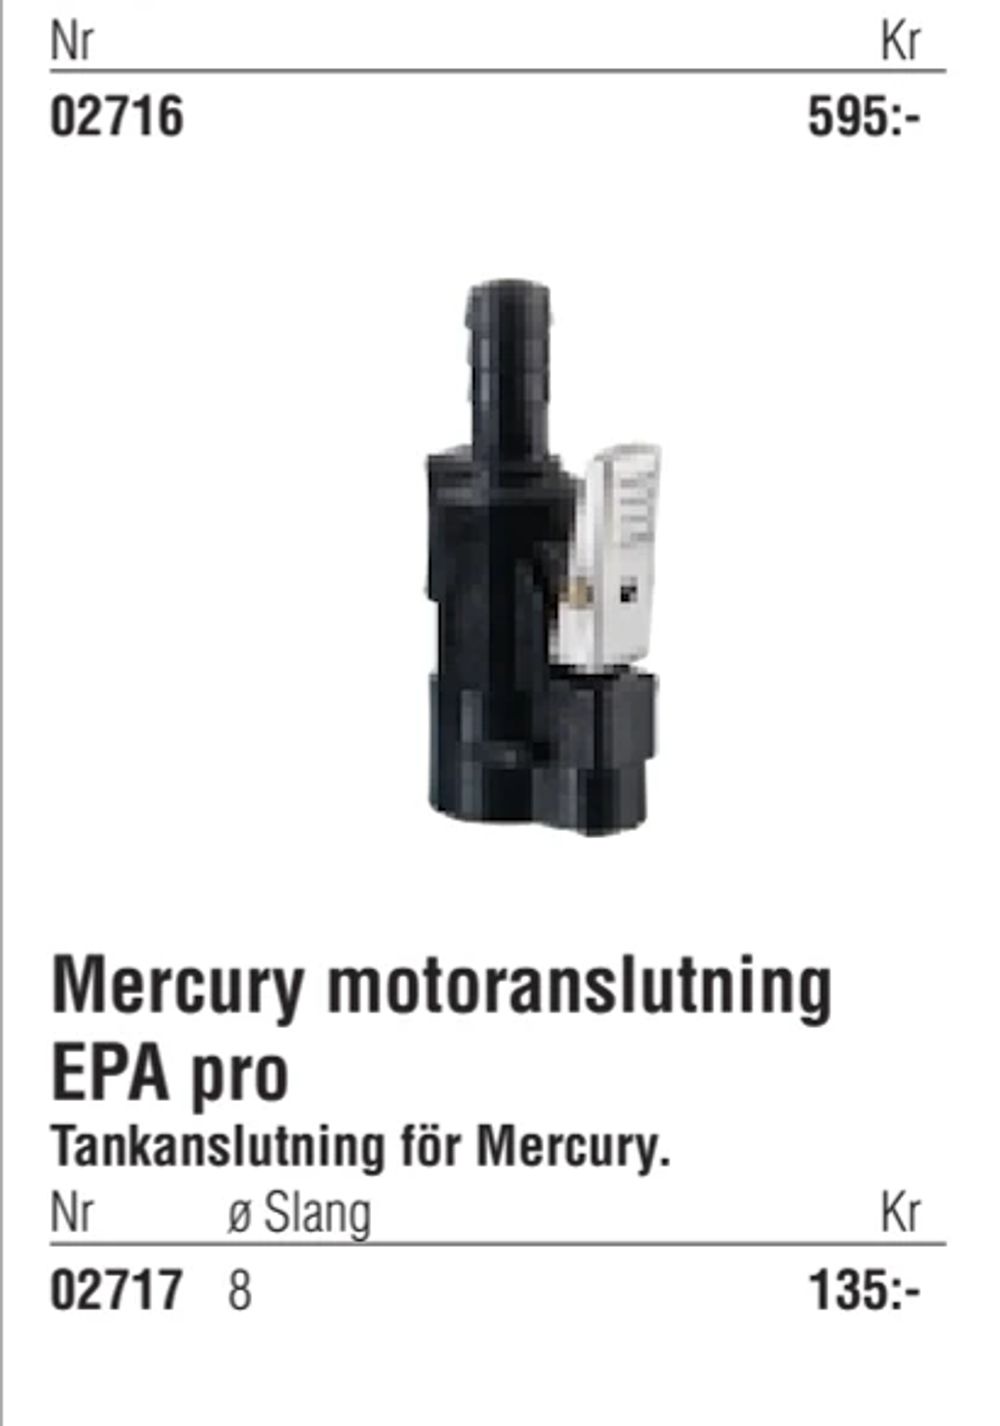 Erbjudanden på Mercury motoranslutning EPA pro från Erlandsons Brygga för 135 kr